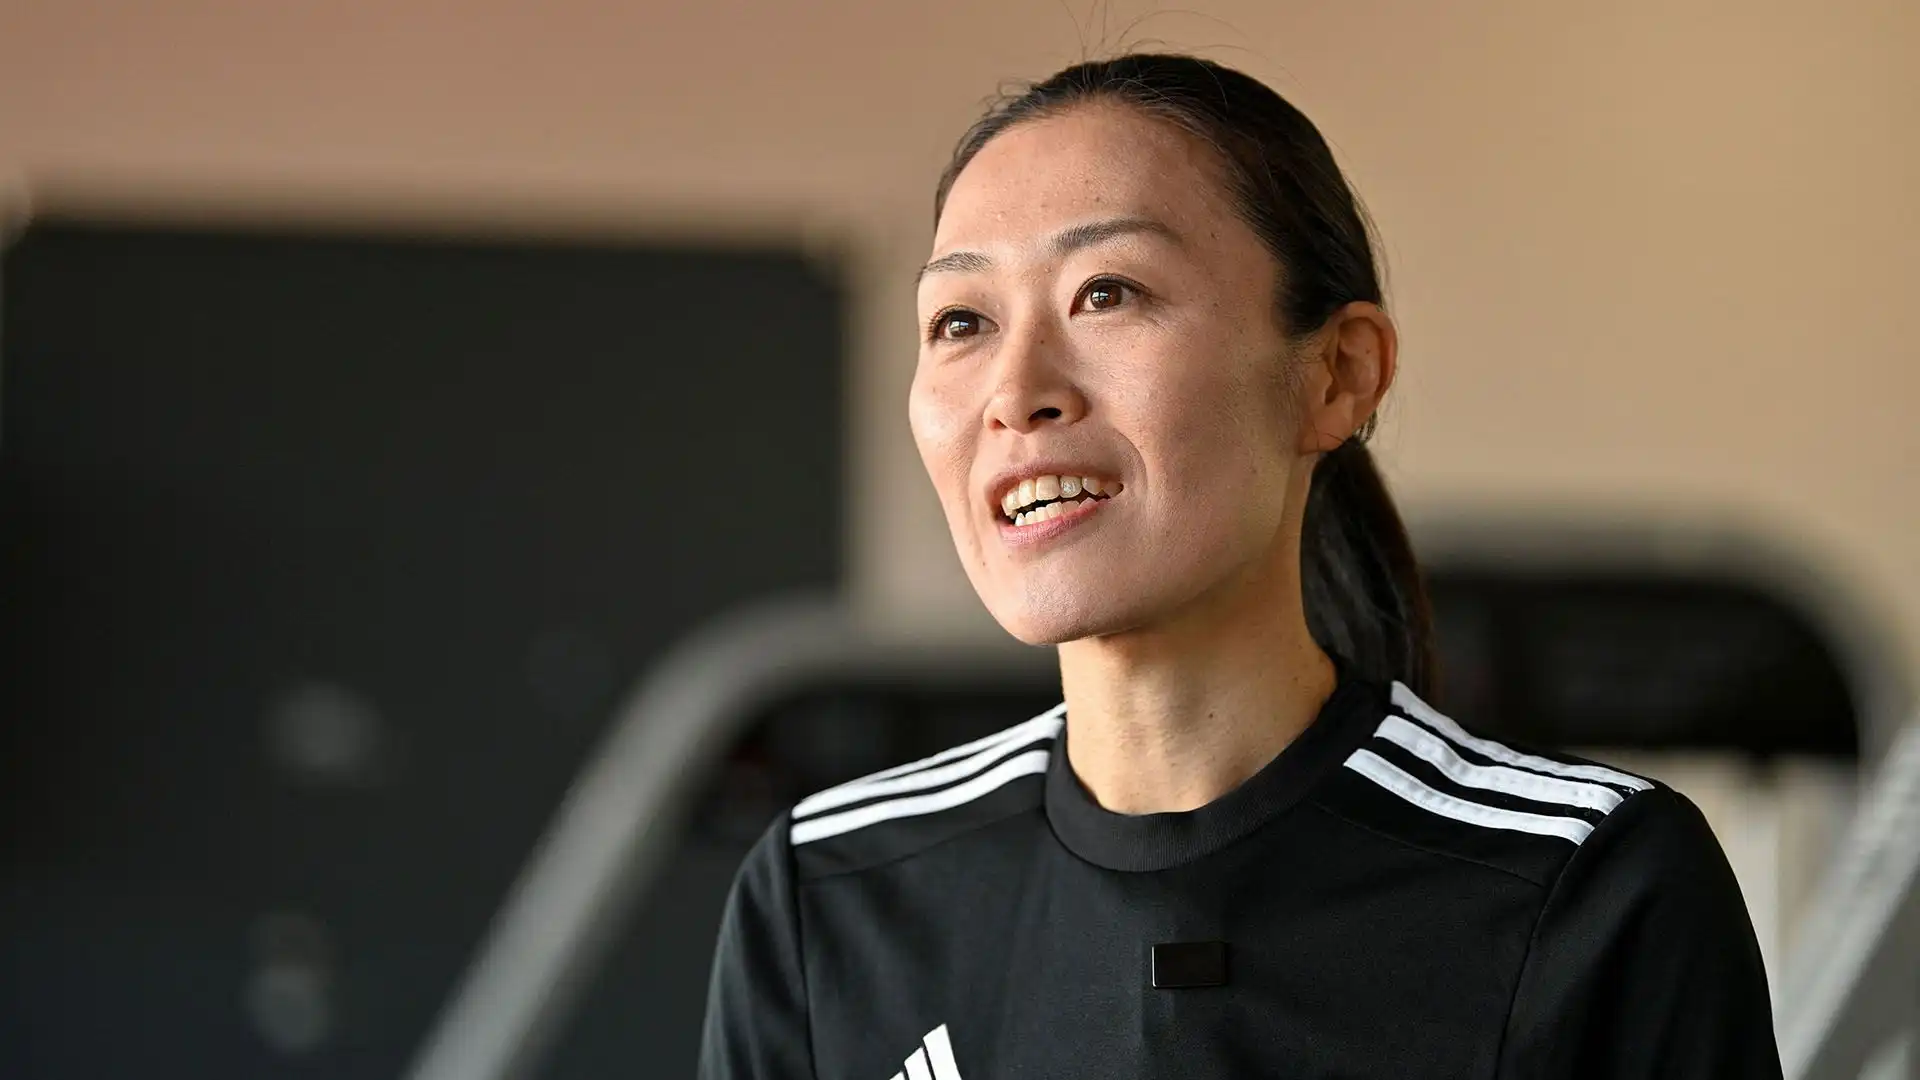 E' la prima donna arbitro ad arbitrare una partita sia nella AFC Champions League maschile che nella J1 League